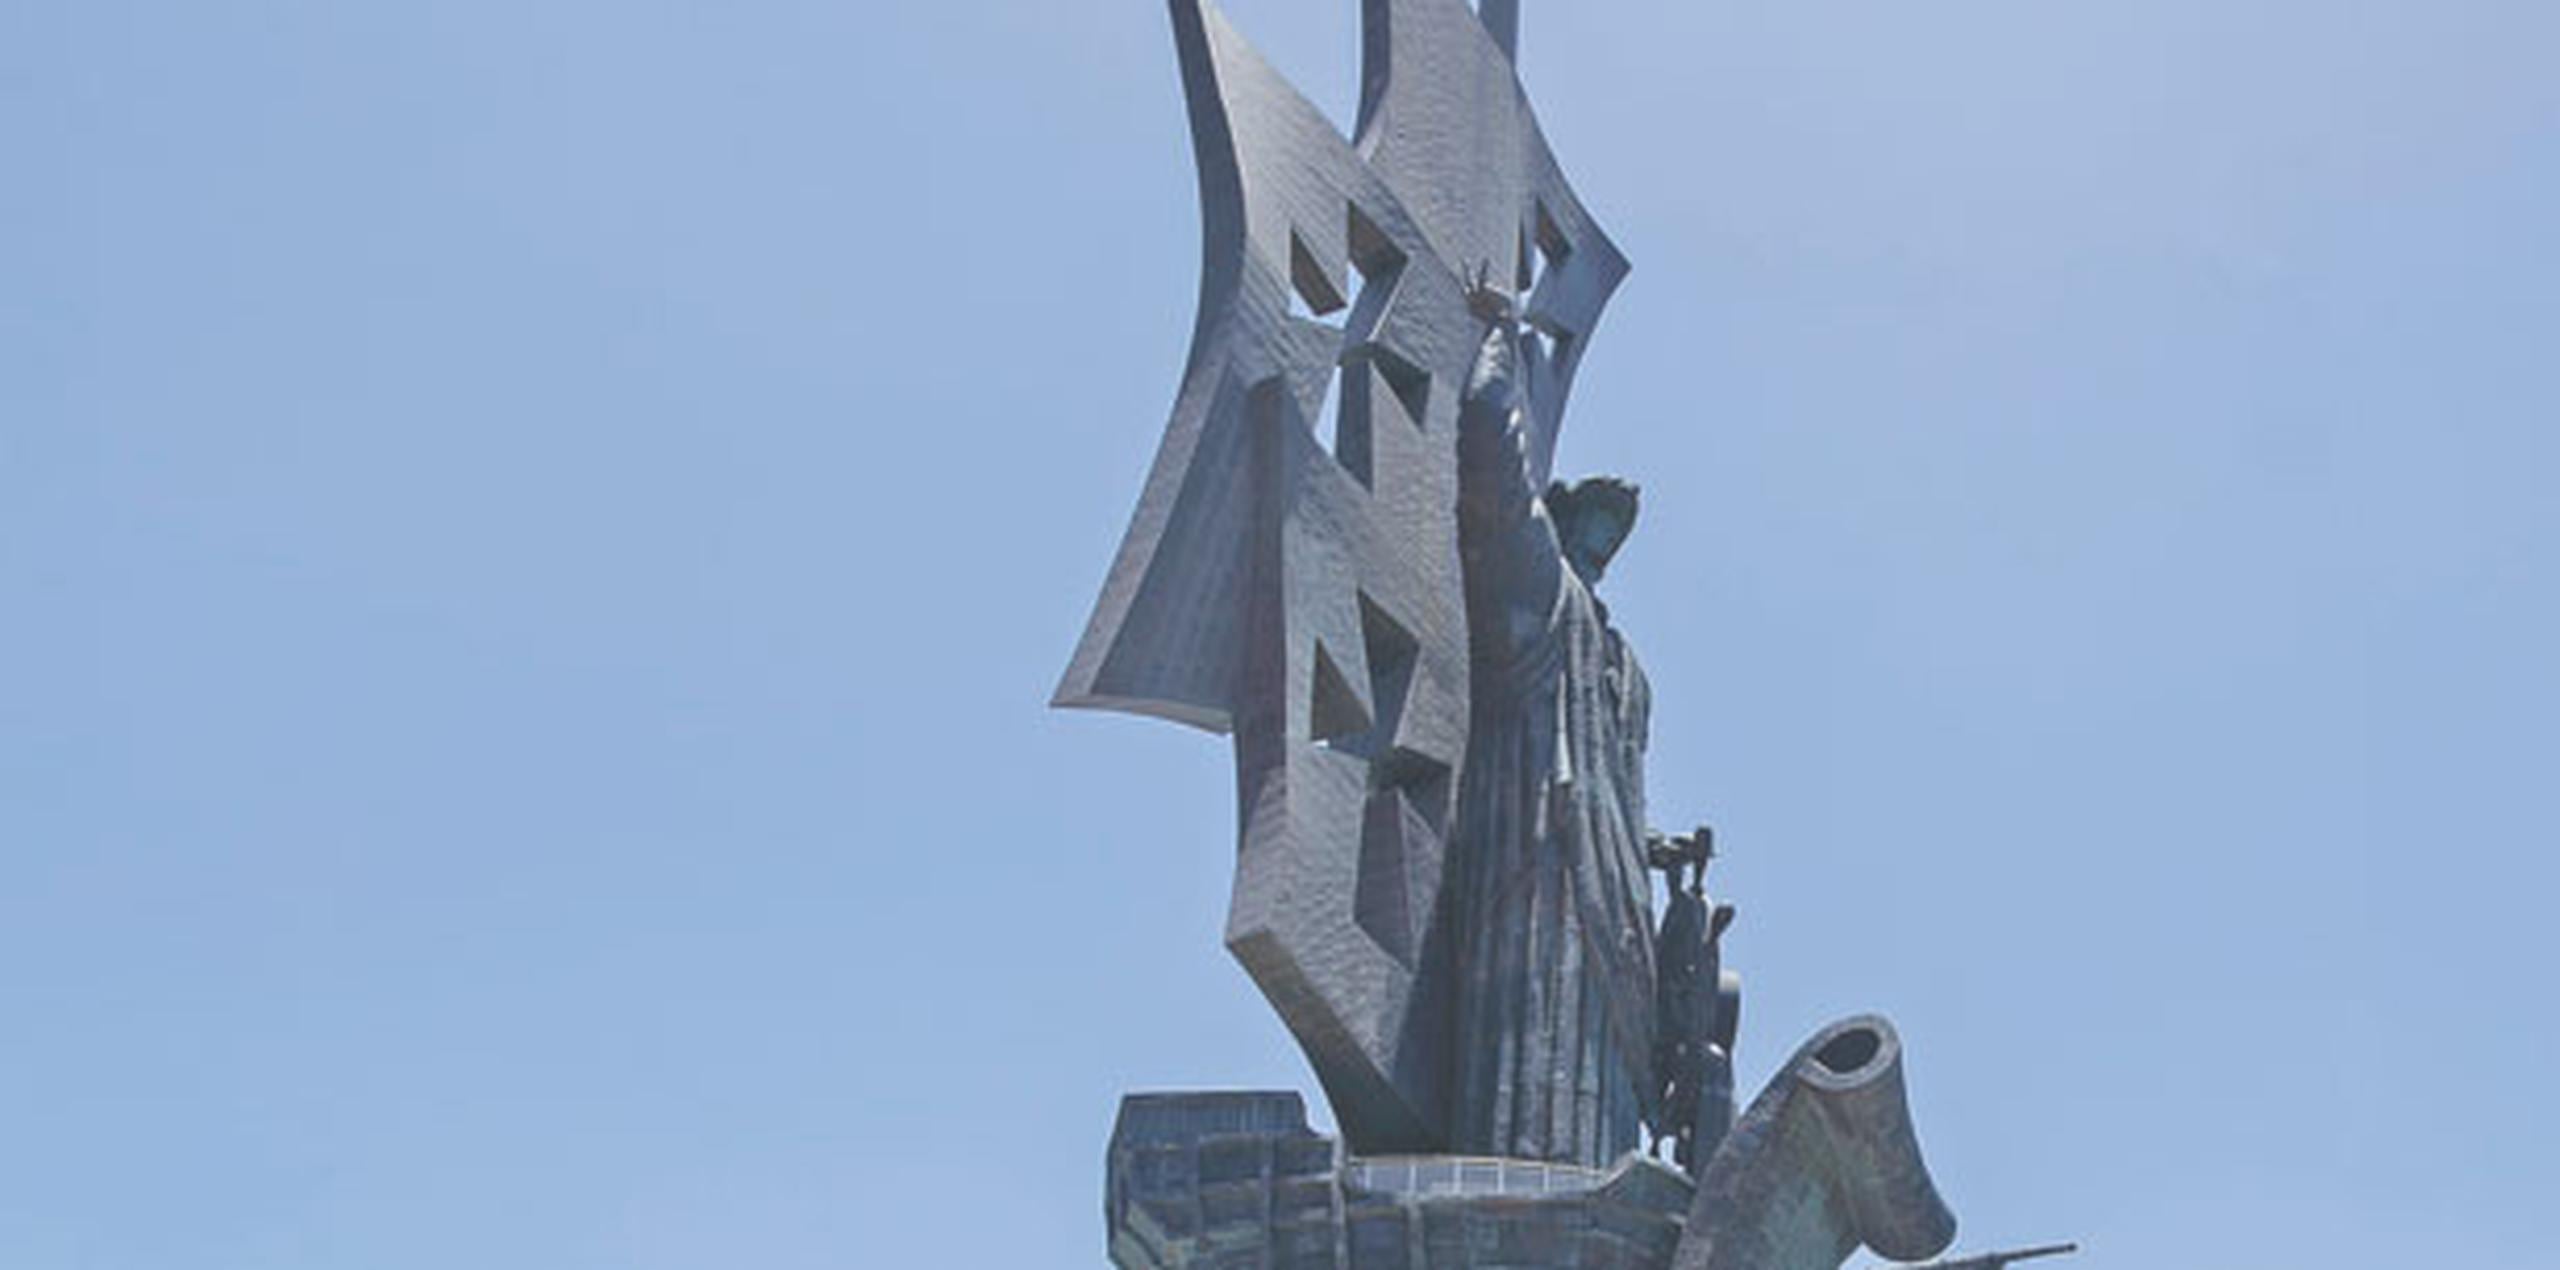 Tras un intento fallido porque la estatua se levantara en la localidad de Cataño, la estatua pasó años en el Puerto Mayagüez, donde tampoco se pudo instalar, hasta llegar a su destino final en Arecibo. (Archivo)